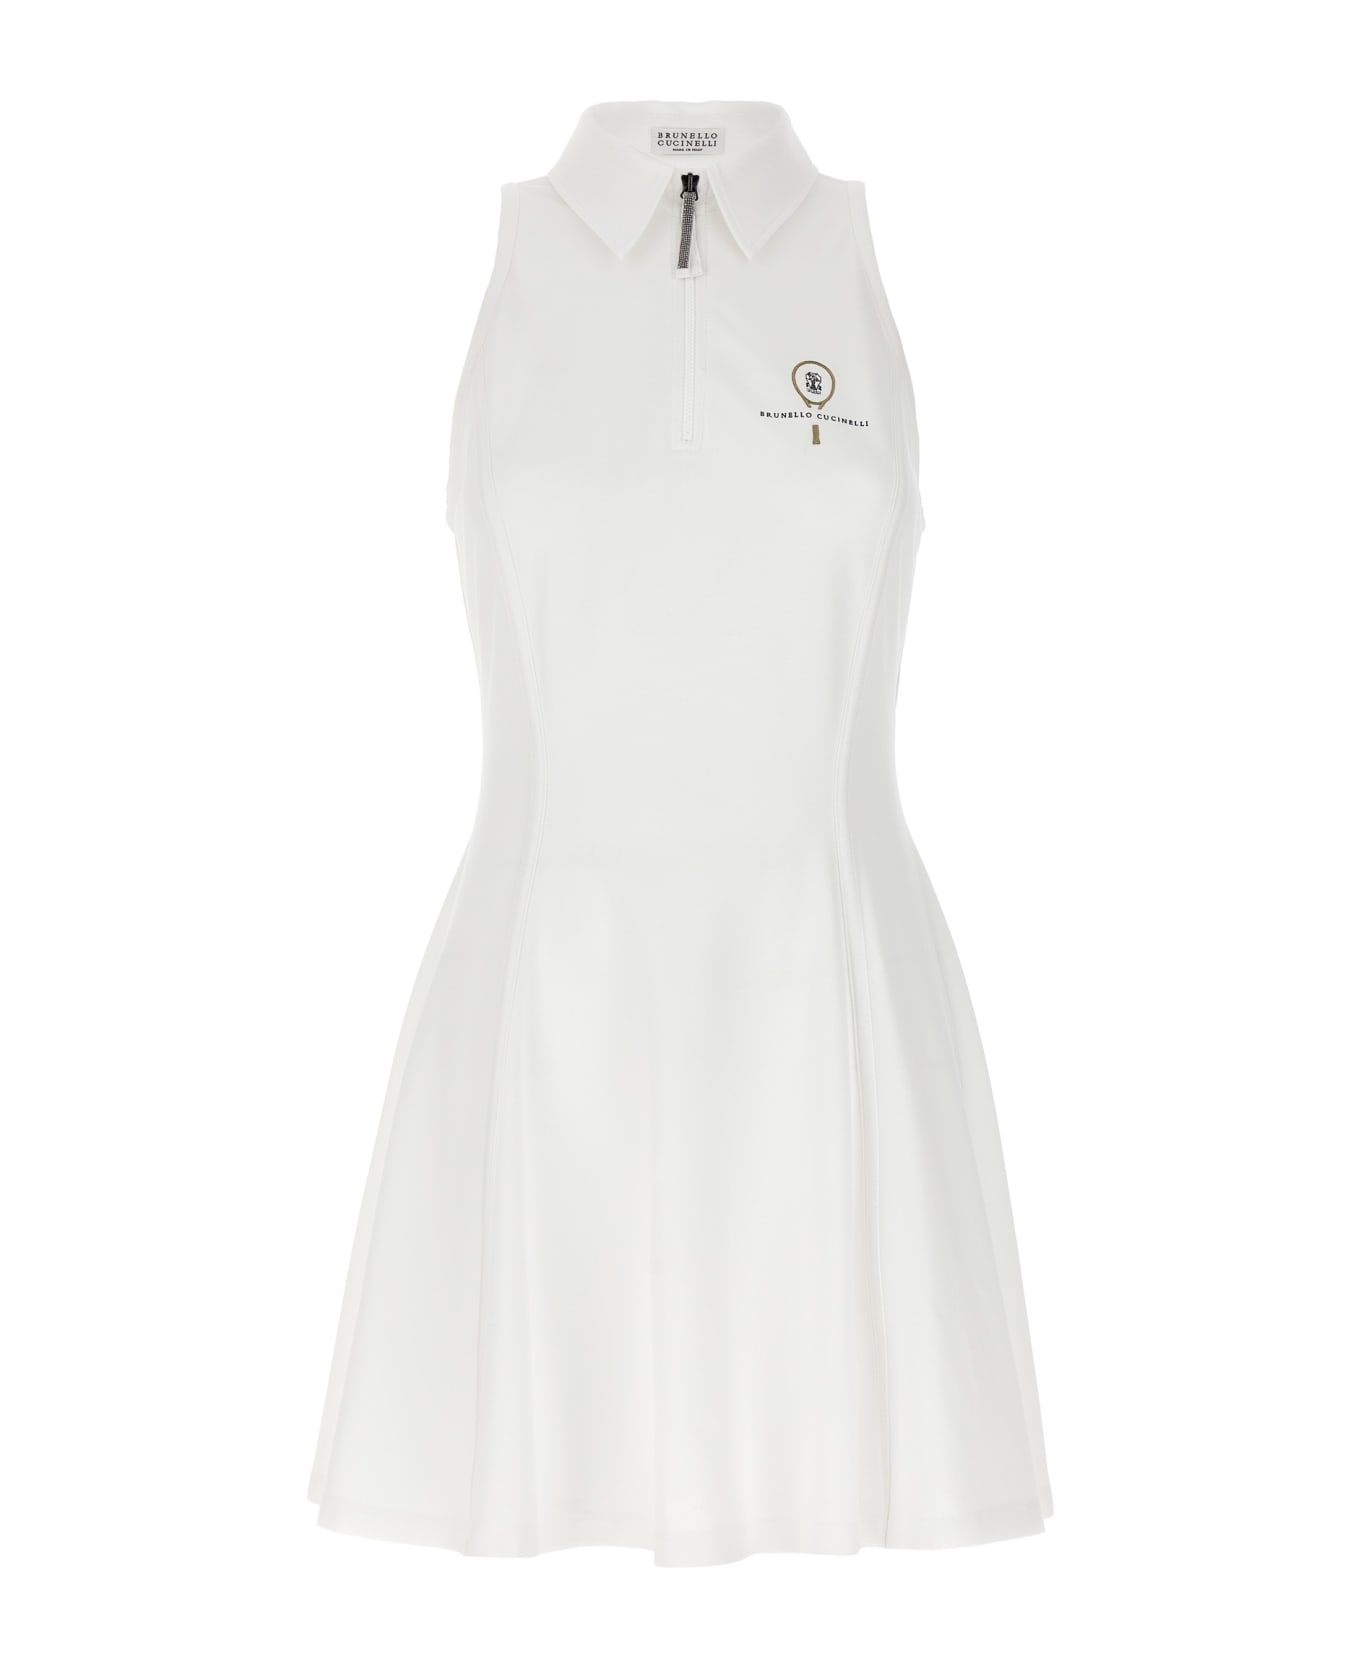 Brunello Cucinelli Logo Embroidery Dress - White